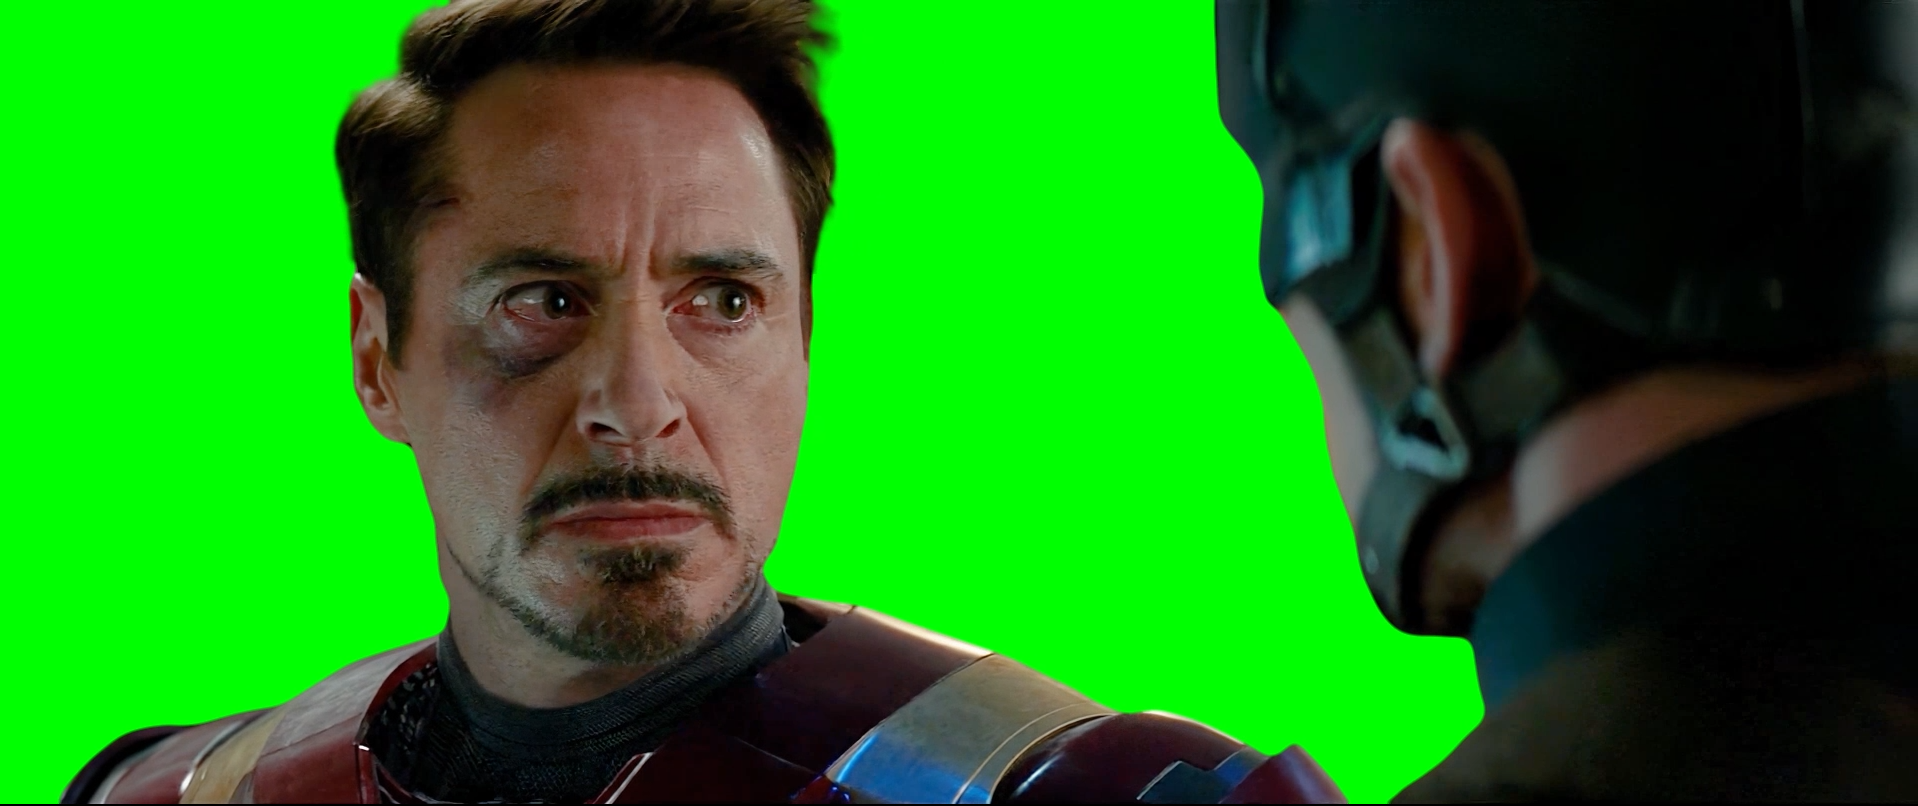 Iron Man asking 